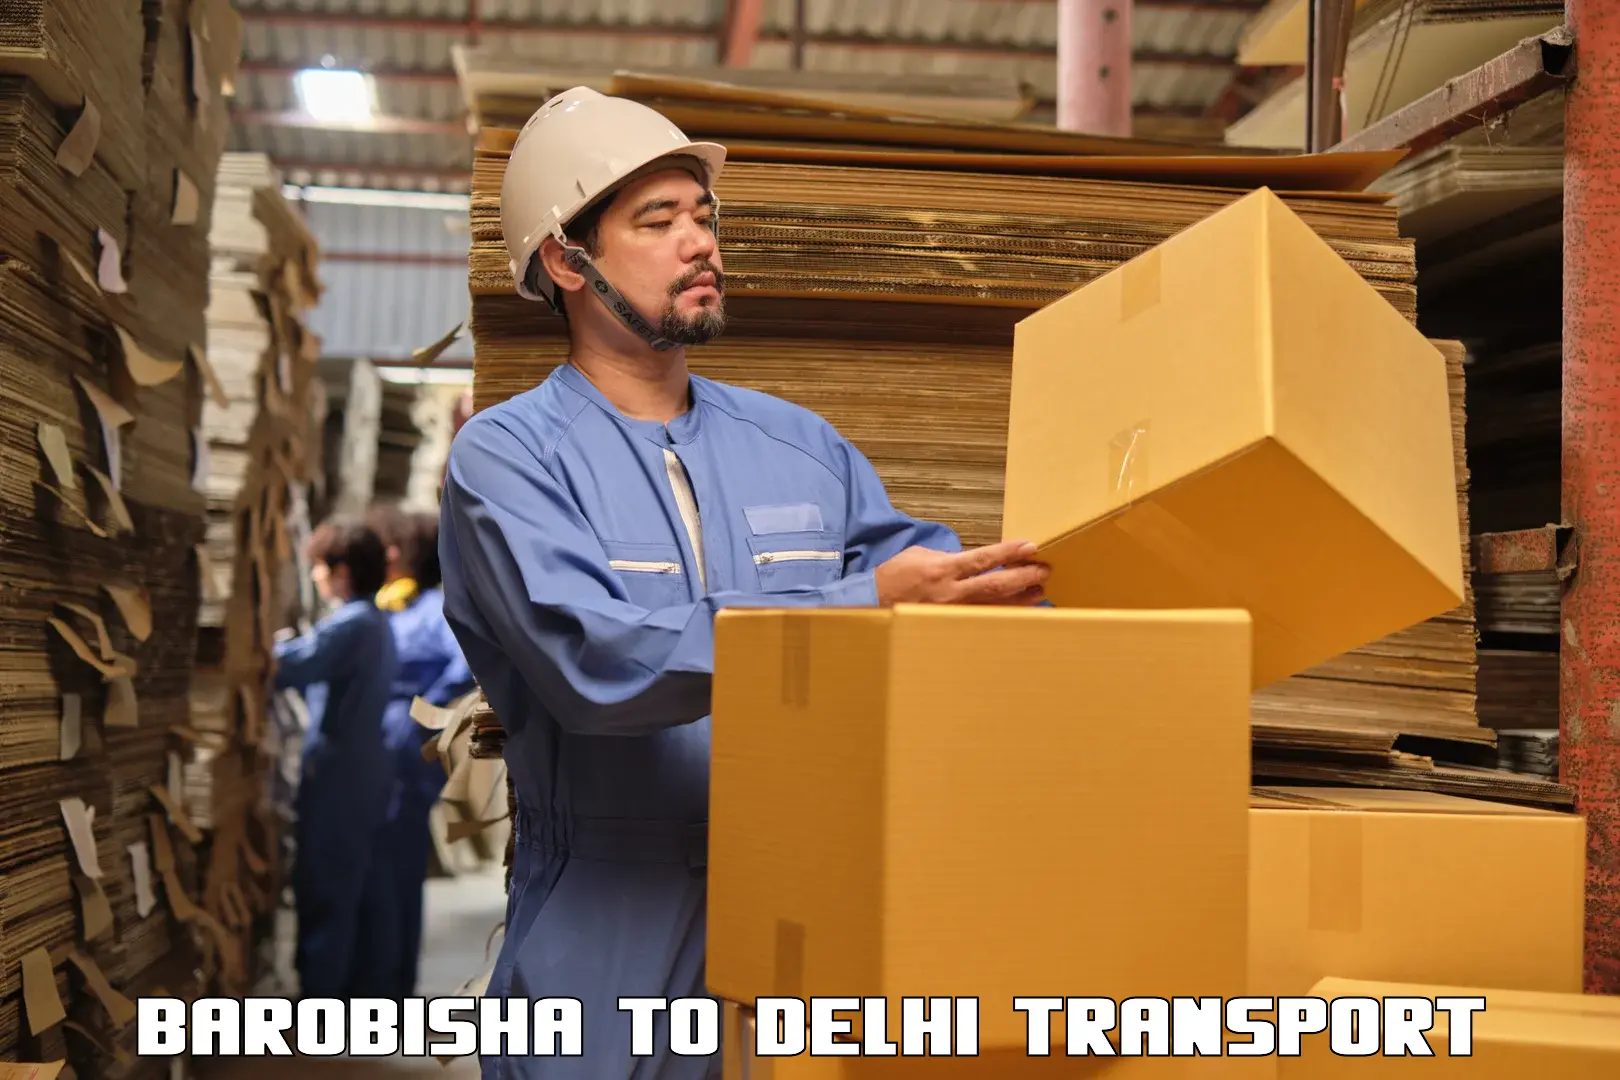 Online transport service Barobisha to East Delhi